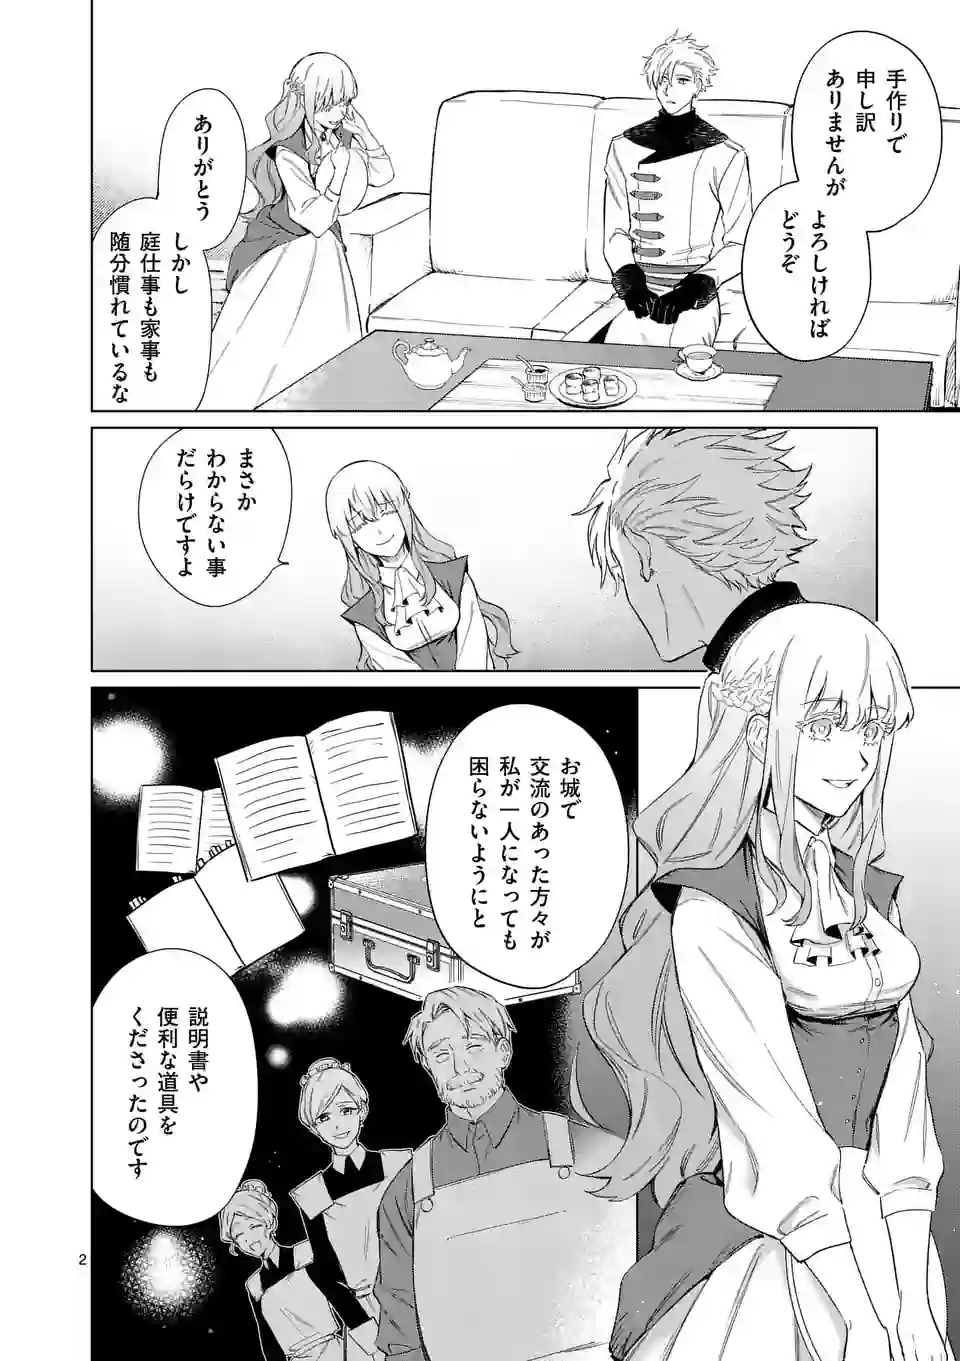 Mou Kyoumi ga Nai to Rikonsareta Reijou no Igai to Tanoshii Shinseikatsu - Chapter 3 - Page 2